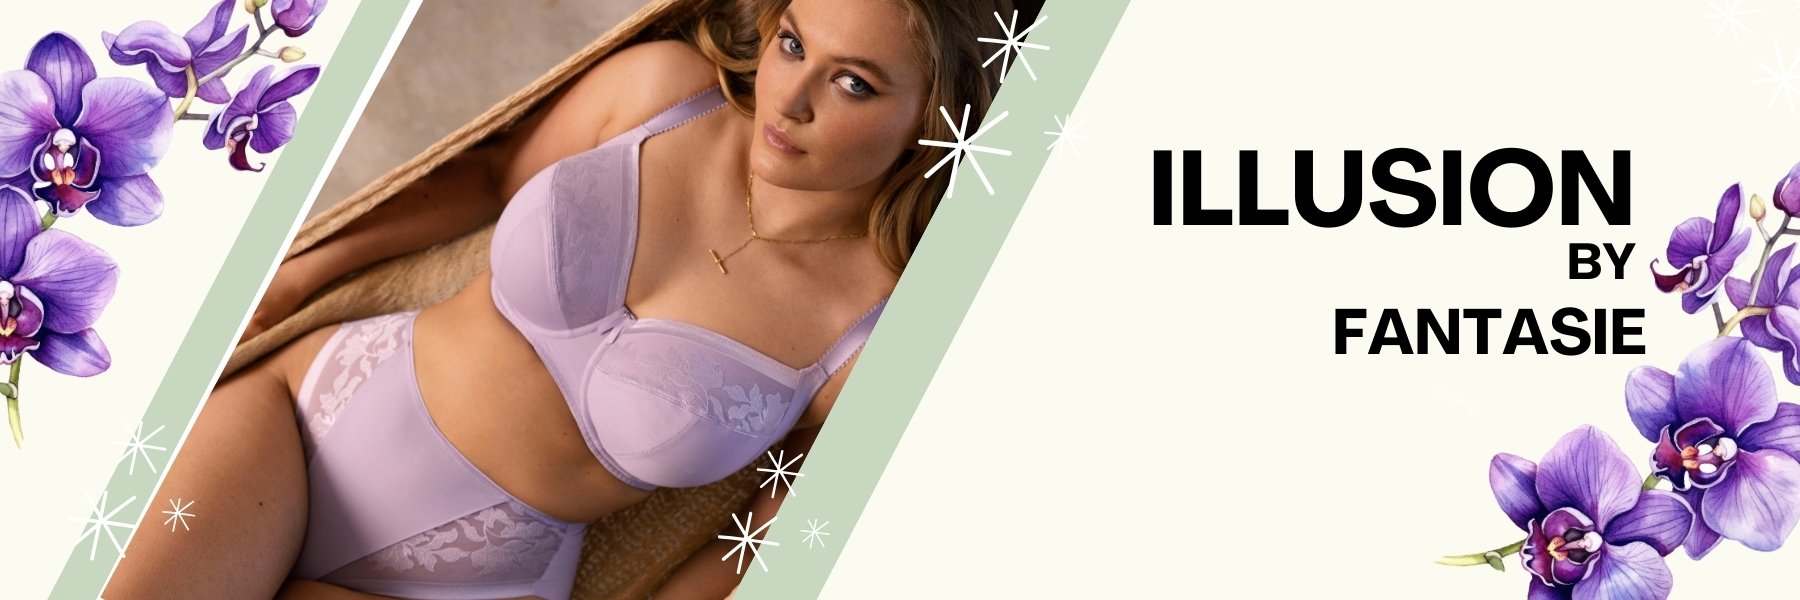 Avokado - Lingerie & Swimwear for women with bigger boobs